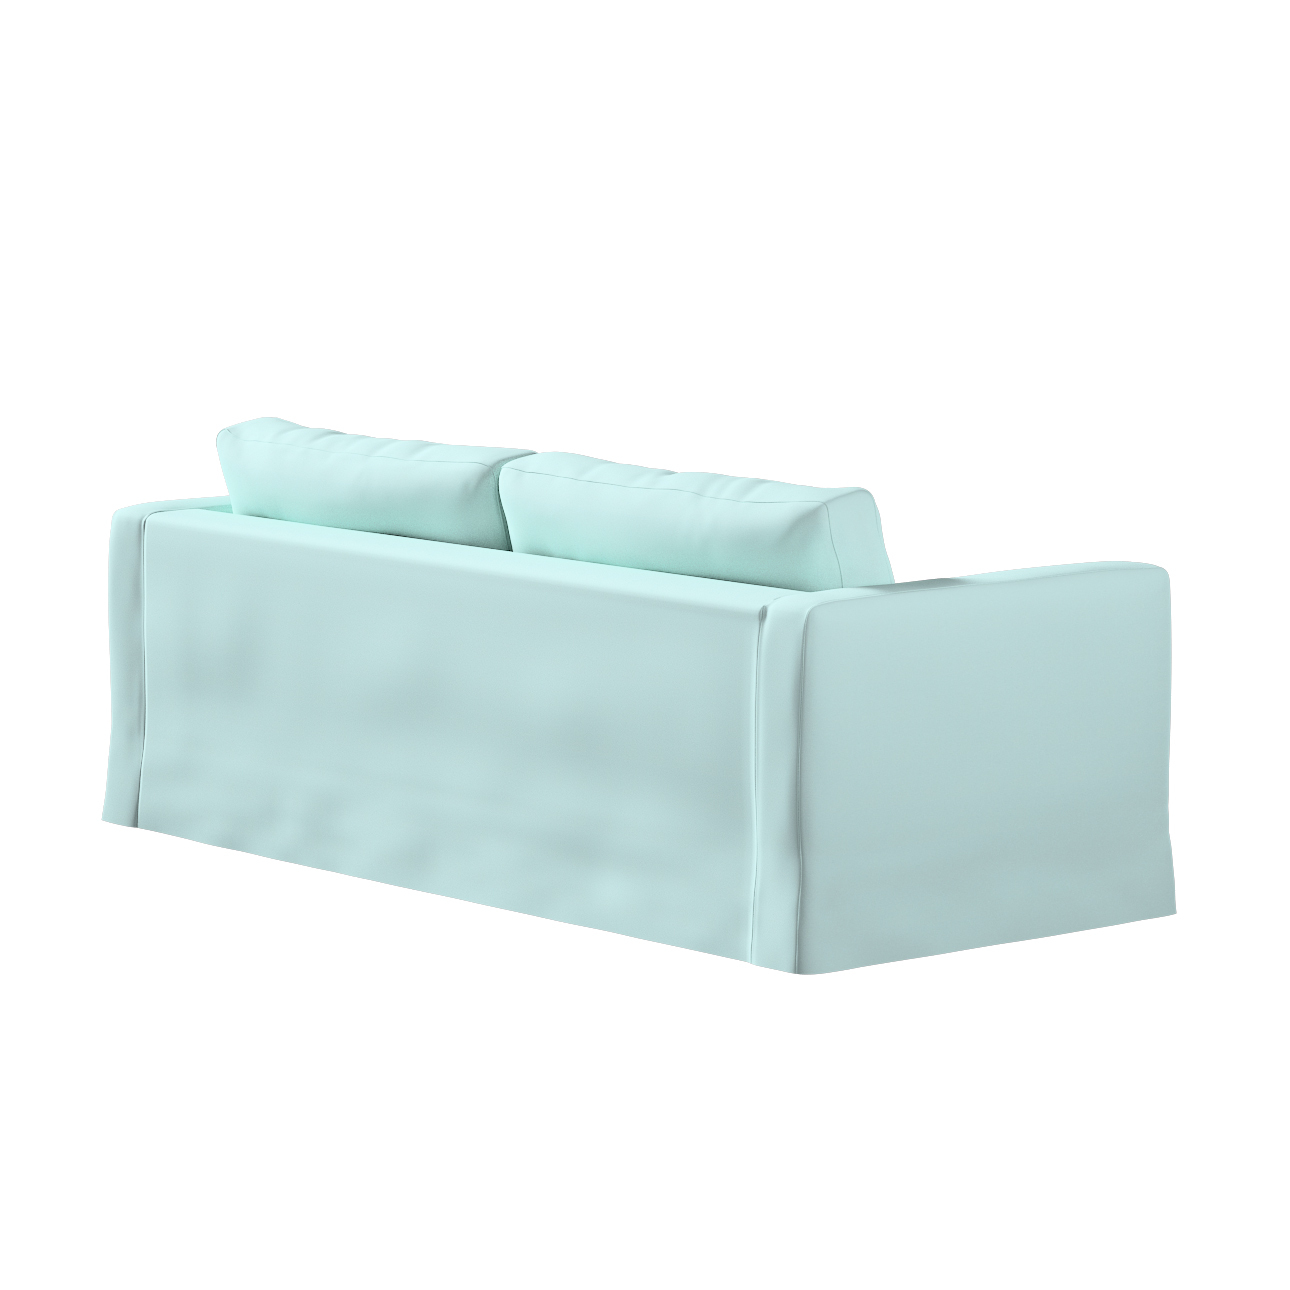 Bezug für Karlstad 3-Sitzer Sofa nicht ausklappbar, lang, hellblau, Bezug f günstig online kaufen